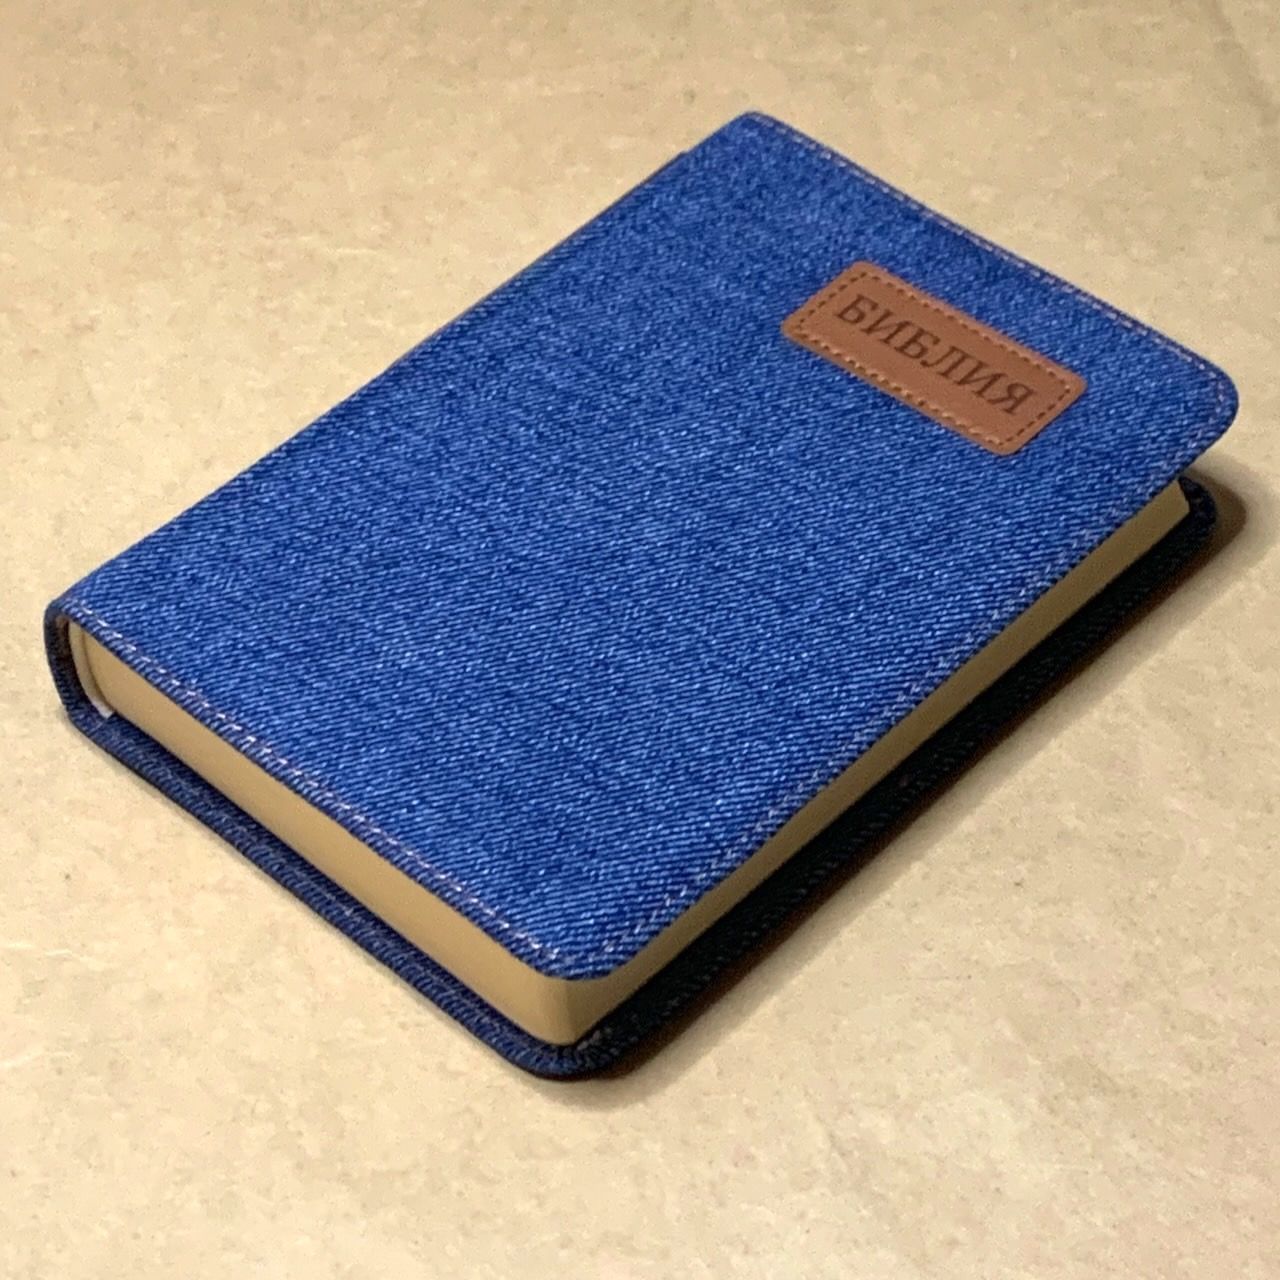 Библия 045J джинсовый переплет, средний формат, 120*170 мм, шрифт 10 -11 кегель, код 1105